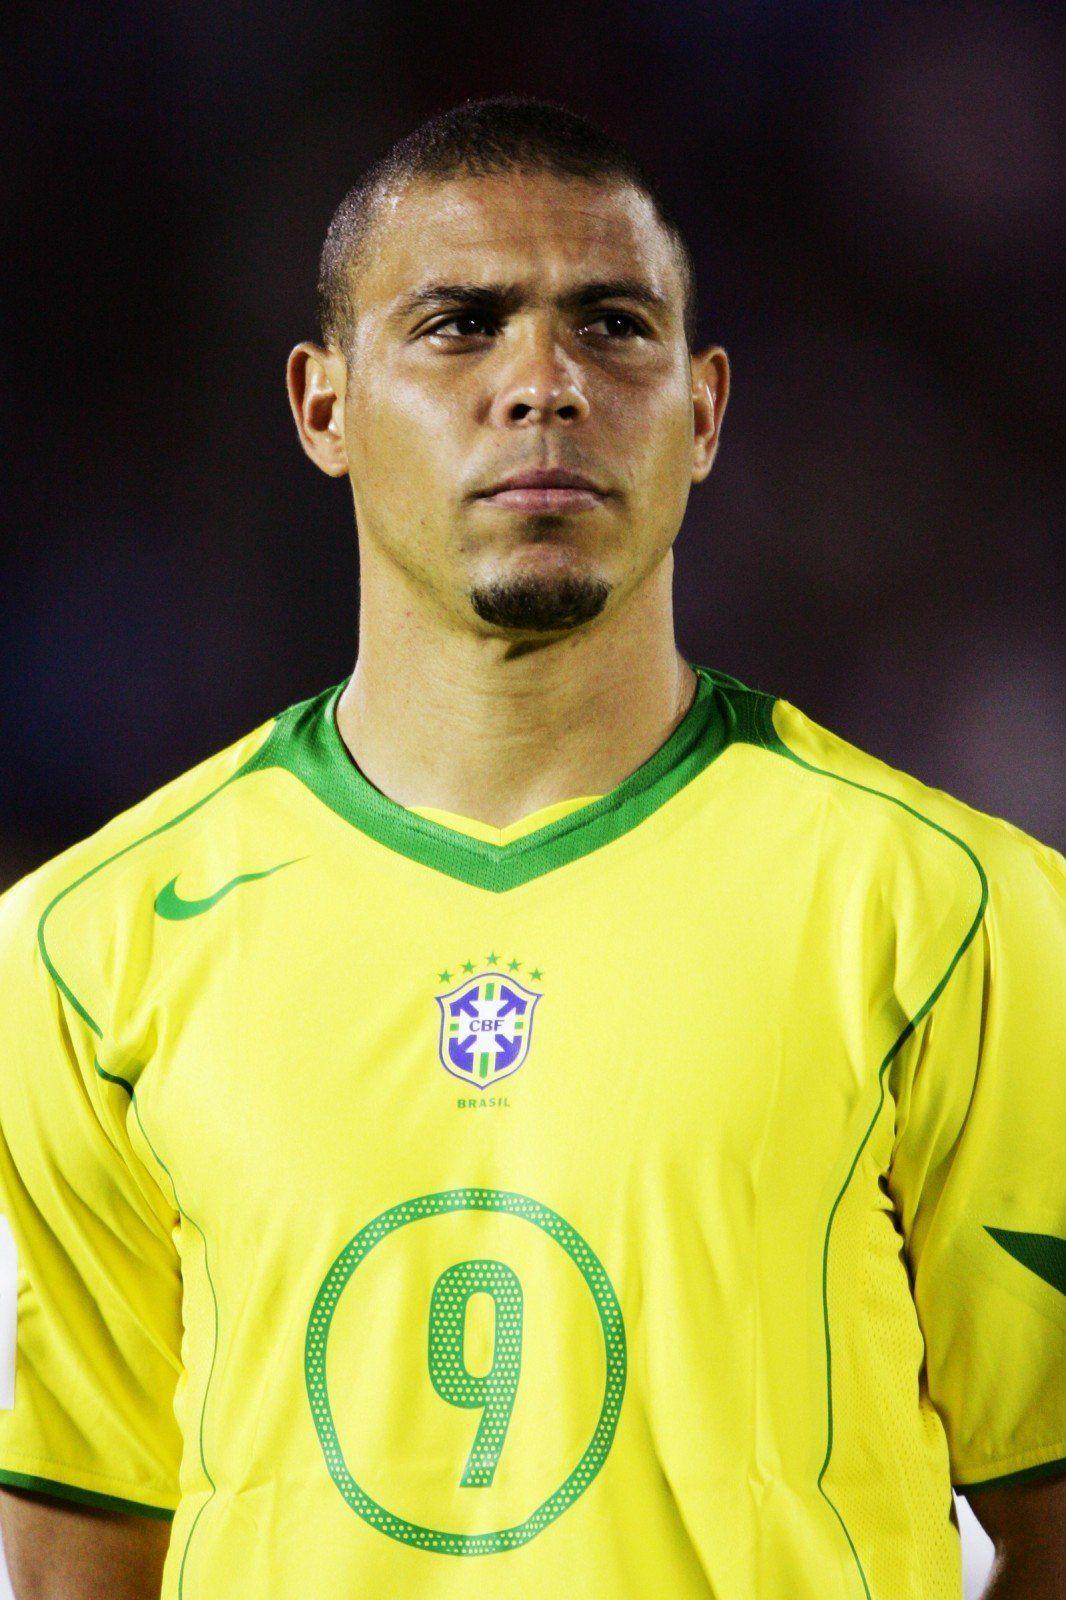 Ronaldo (Brasil)